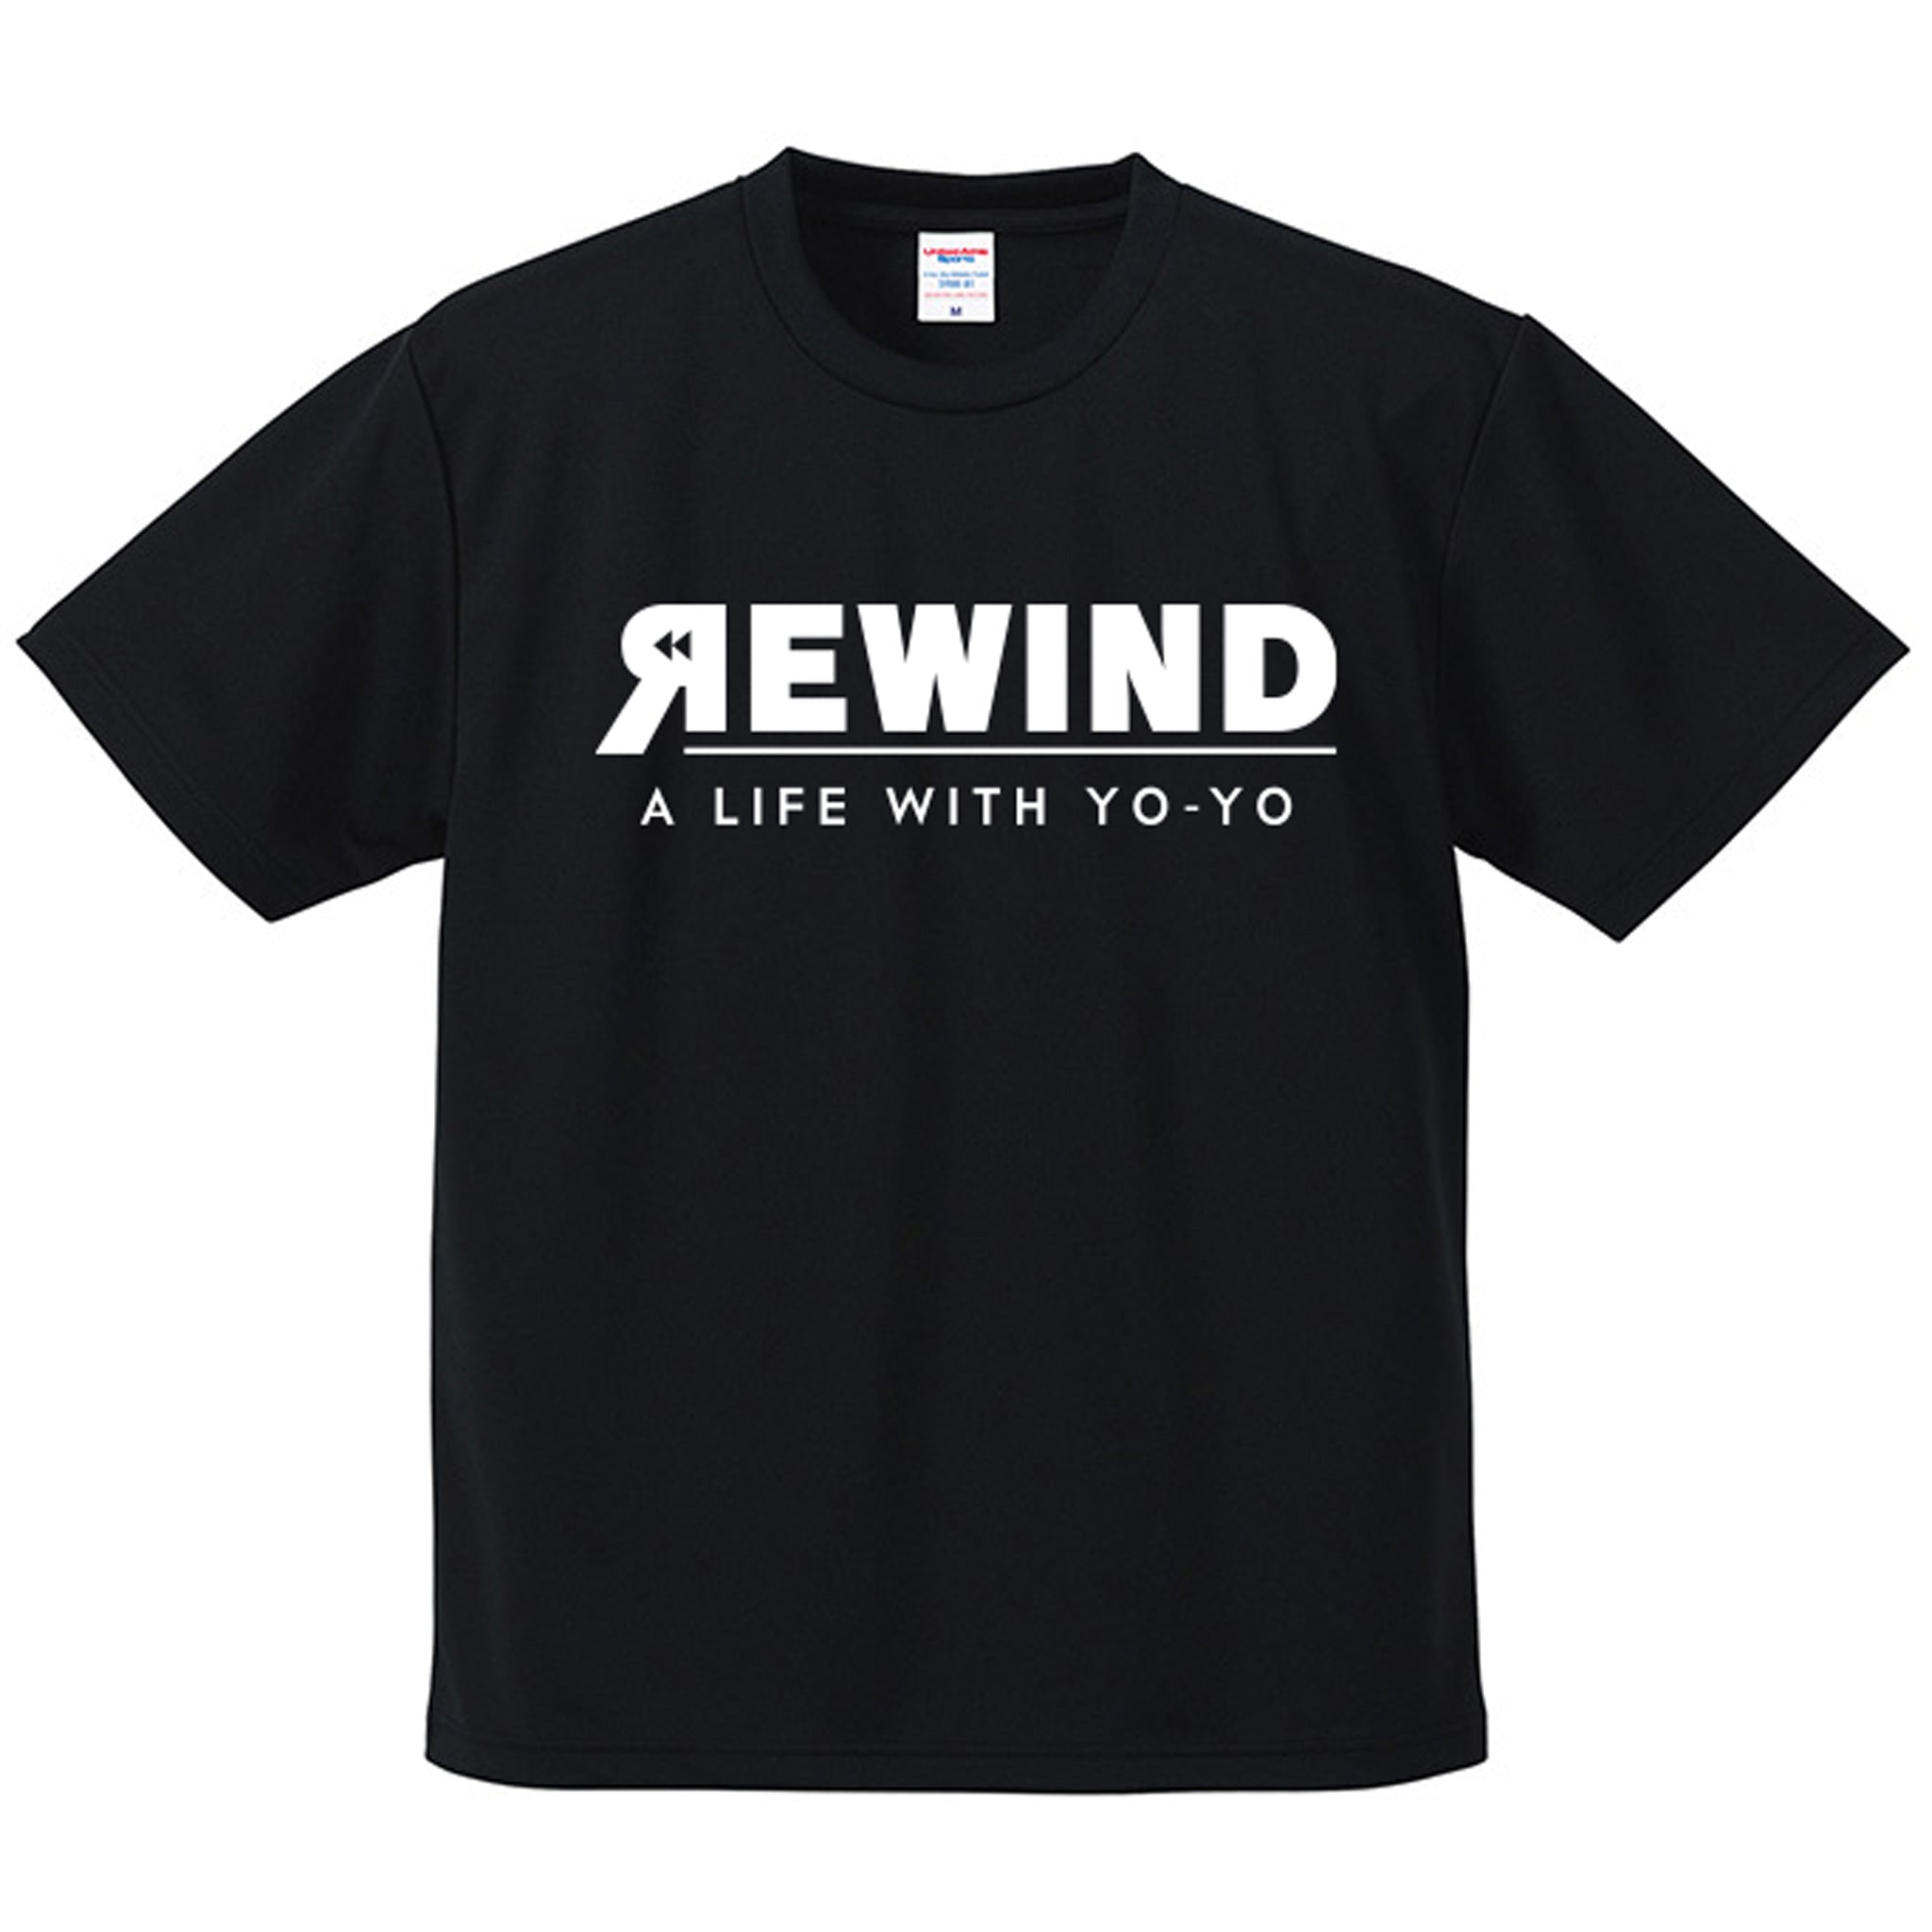 REWIND -A LIFE WITH YO-YO- Dry T-shirt (Black / White Logo)